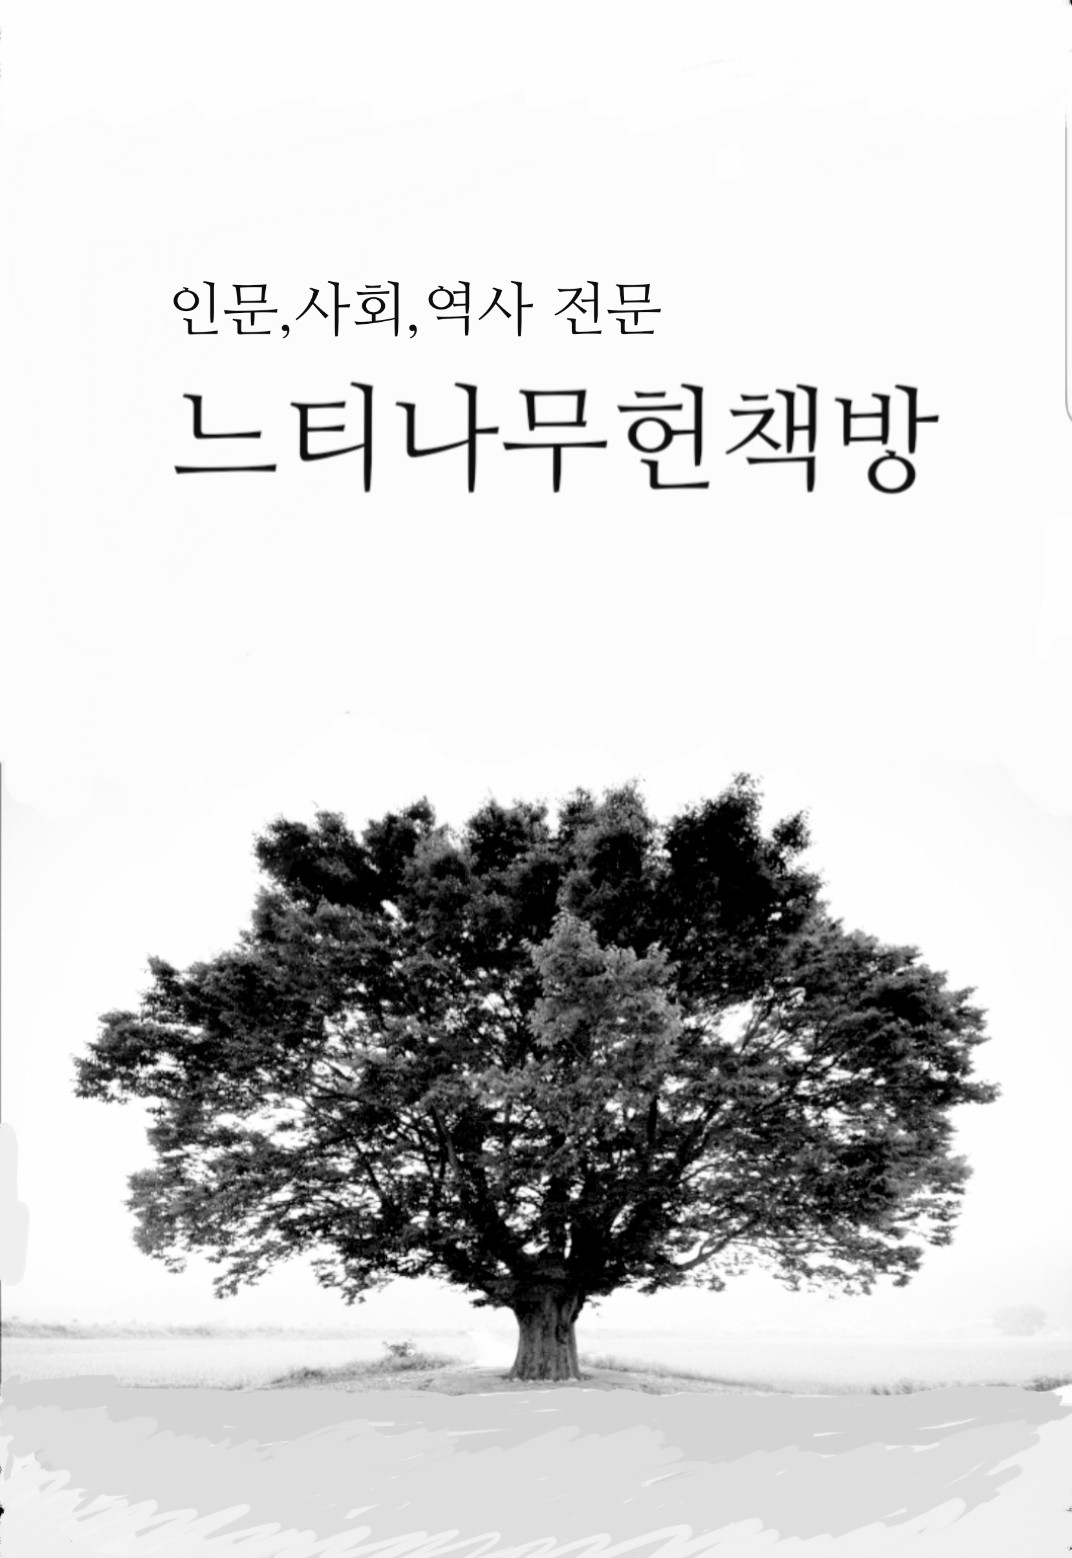 신라 왕릉 - 향토와 문화 92 (알특6코너) 